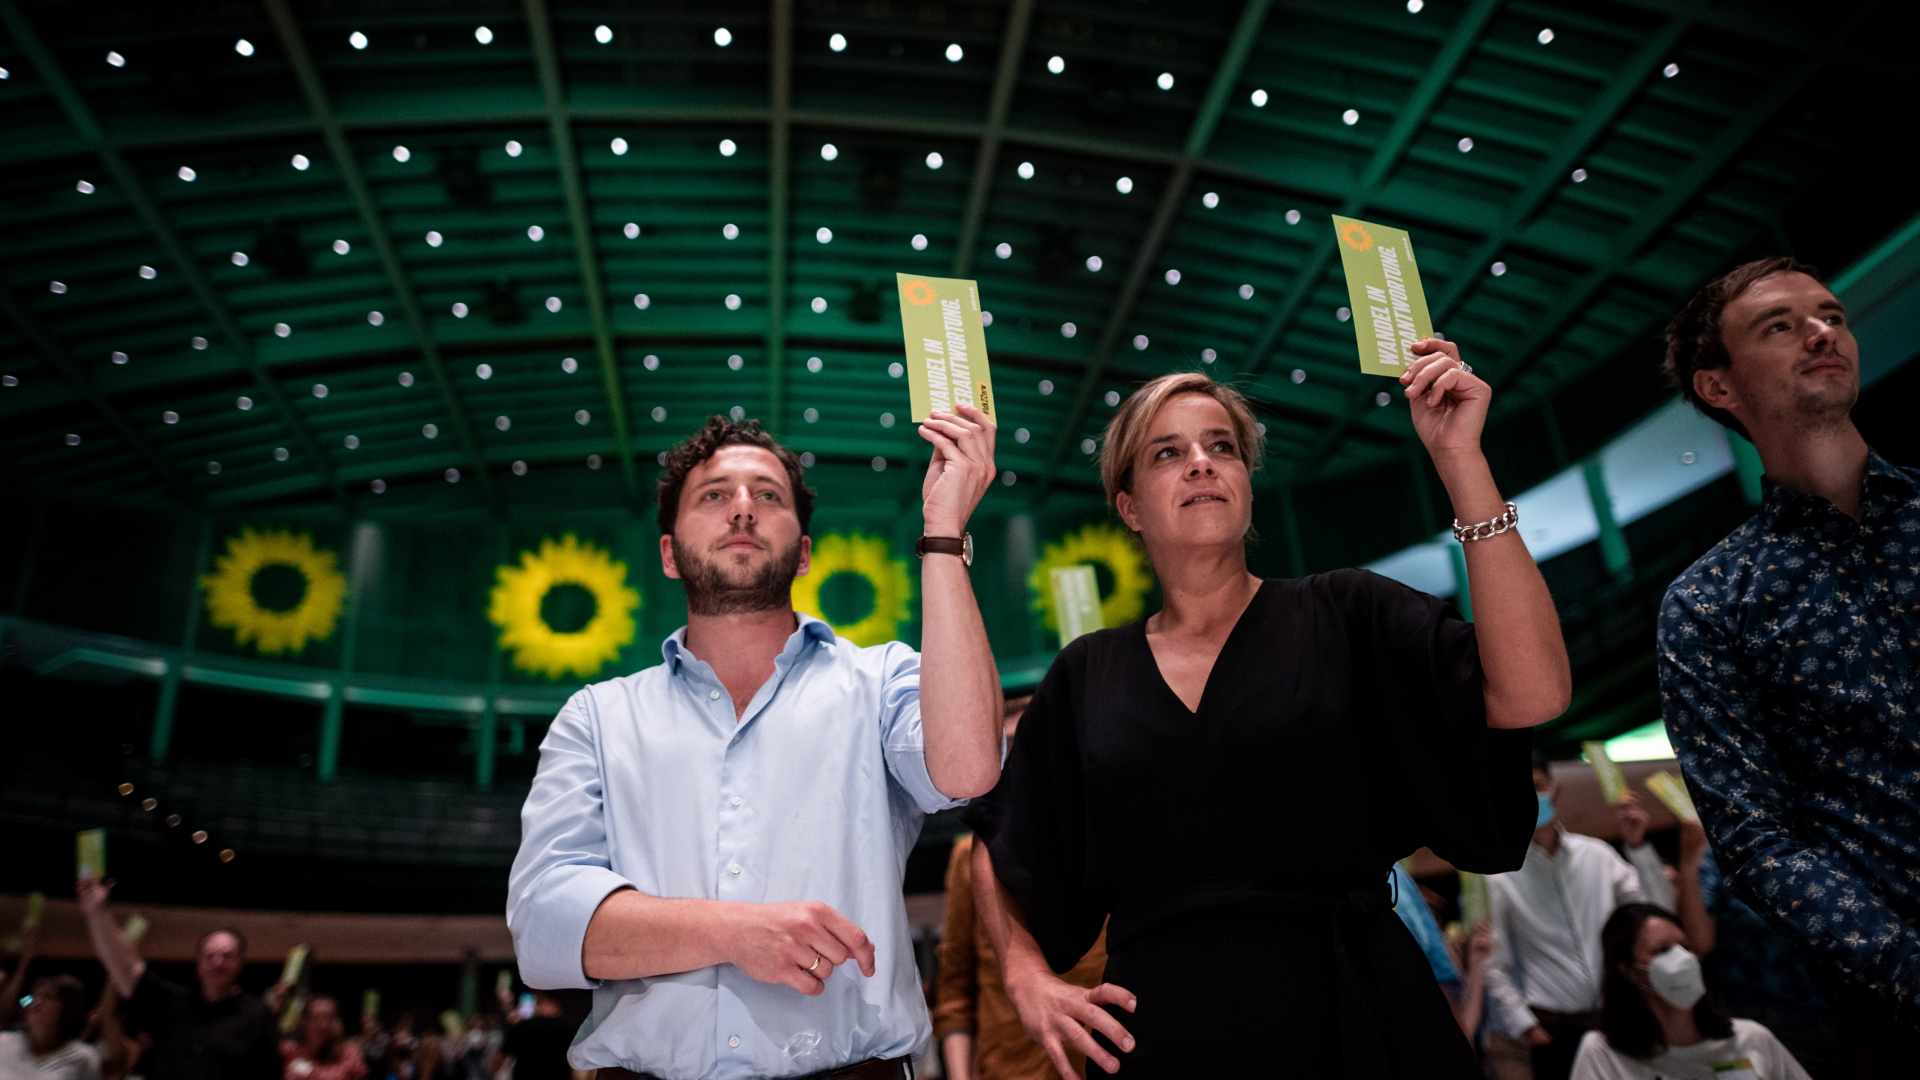 Die Landesparteivorsitzenden der Grünen, Felix Banaszak und  Mona Neubaur, stimmen beim Parteitag in Bielefeld über den Koalitionsvertrag mit der CDU ab. | dpa